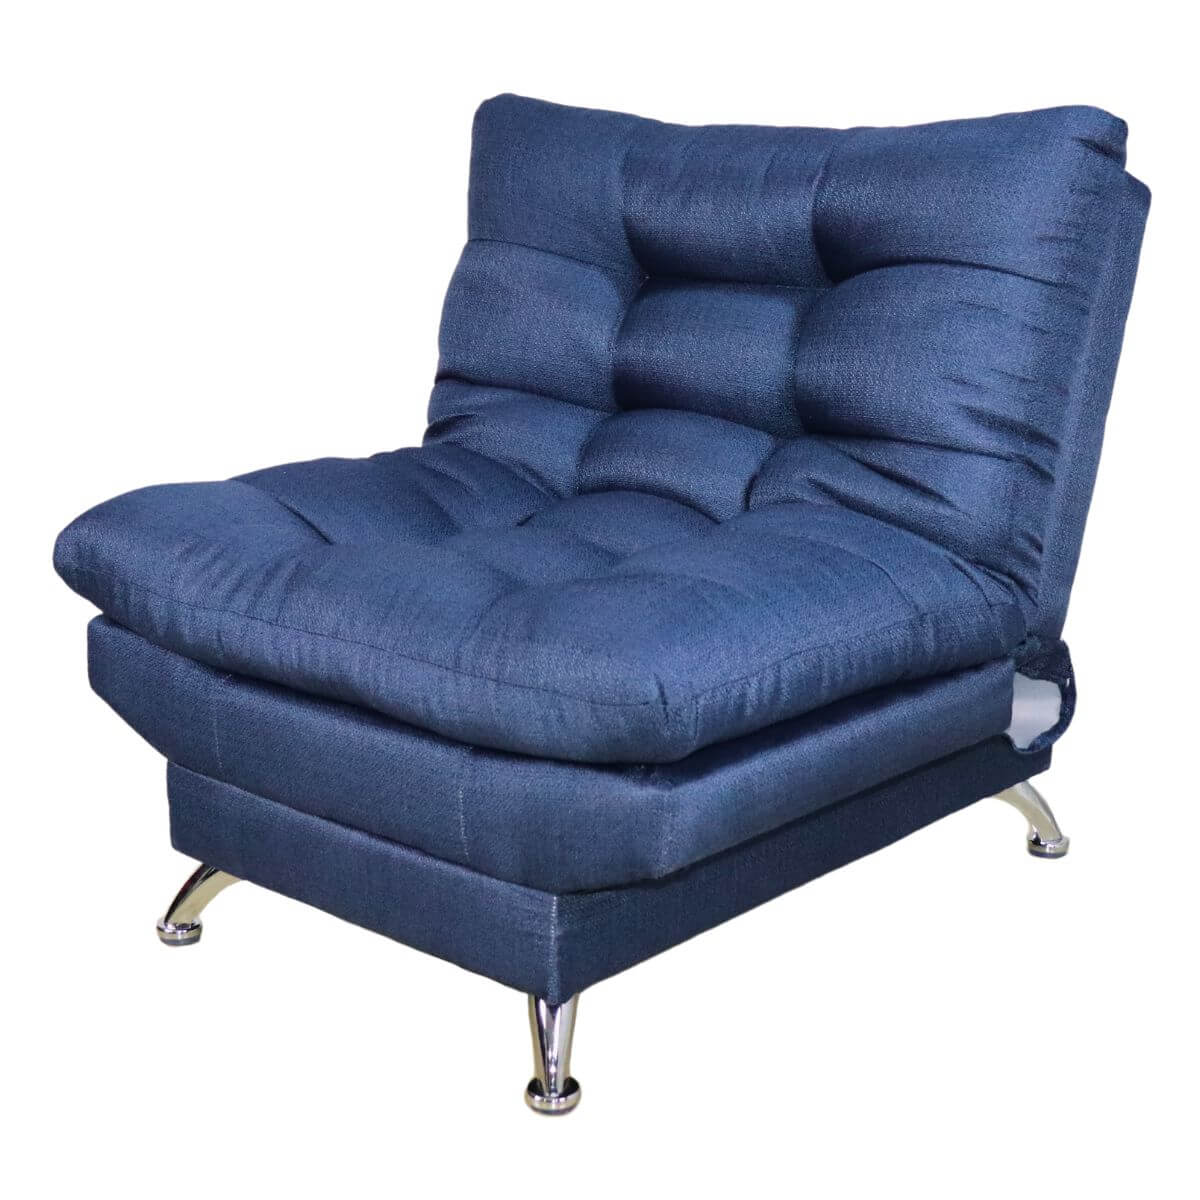 comprar sillón para sala azul cerca de mi #color_marino